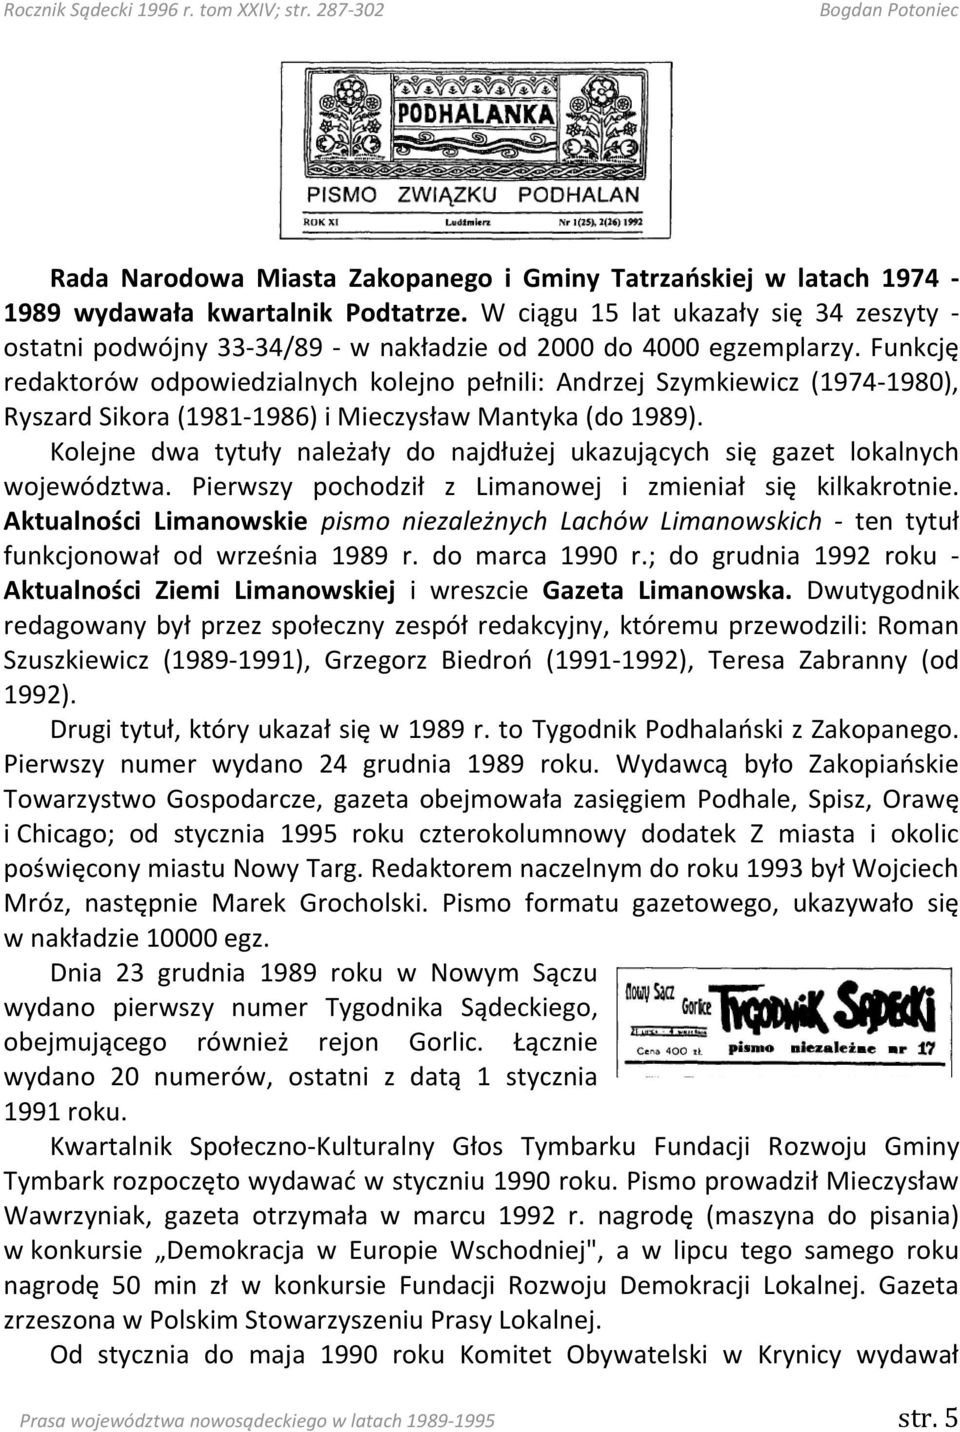 Funkcję redaktorów odpowiedzialnych kolejno pełnili: Andrzej Szymkiewicz (1974-1980), Ryszard Sikora (1981-1986) i Mieczysław Mantyka (do 1989).